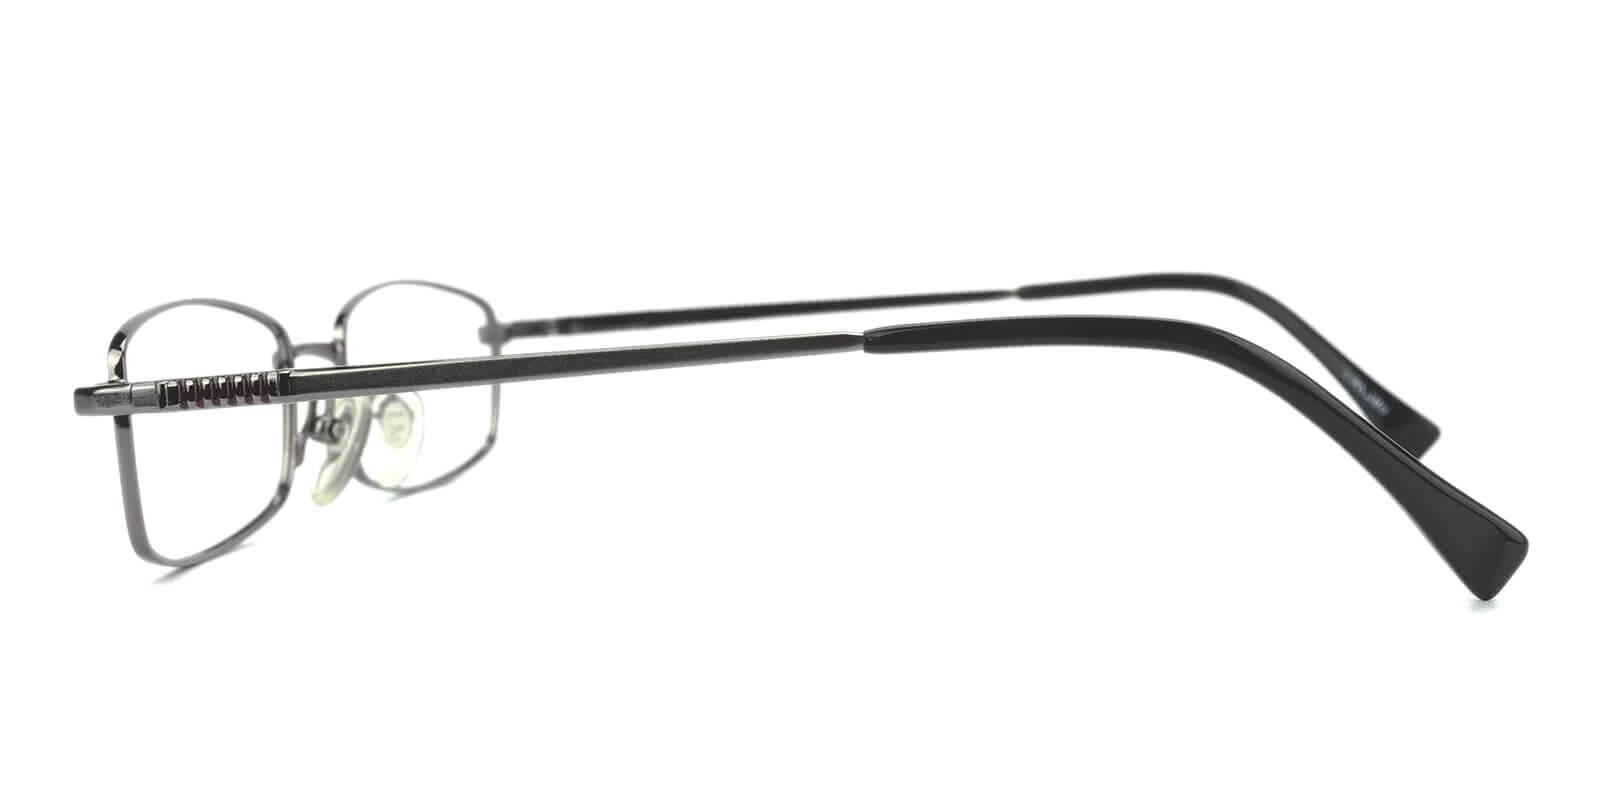 Gihon Gun Metal Eyeglasses , NosePads Frames from ABBE Glasses